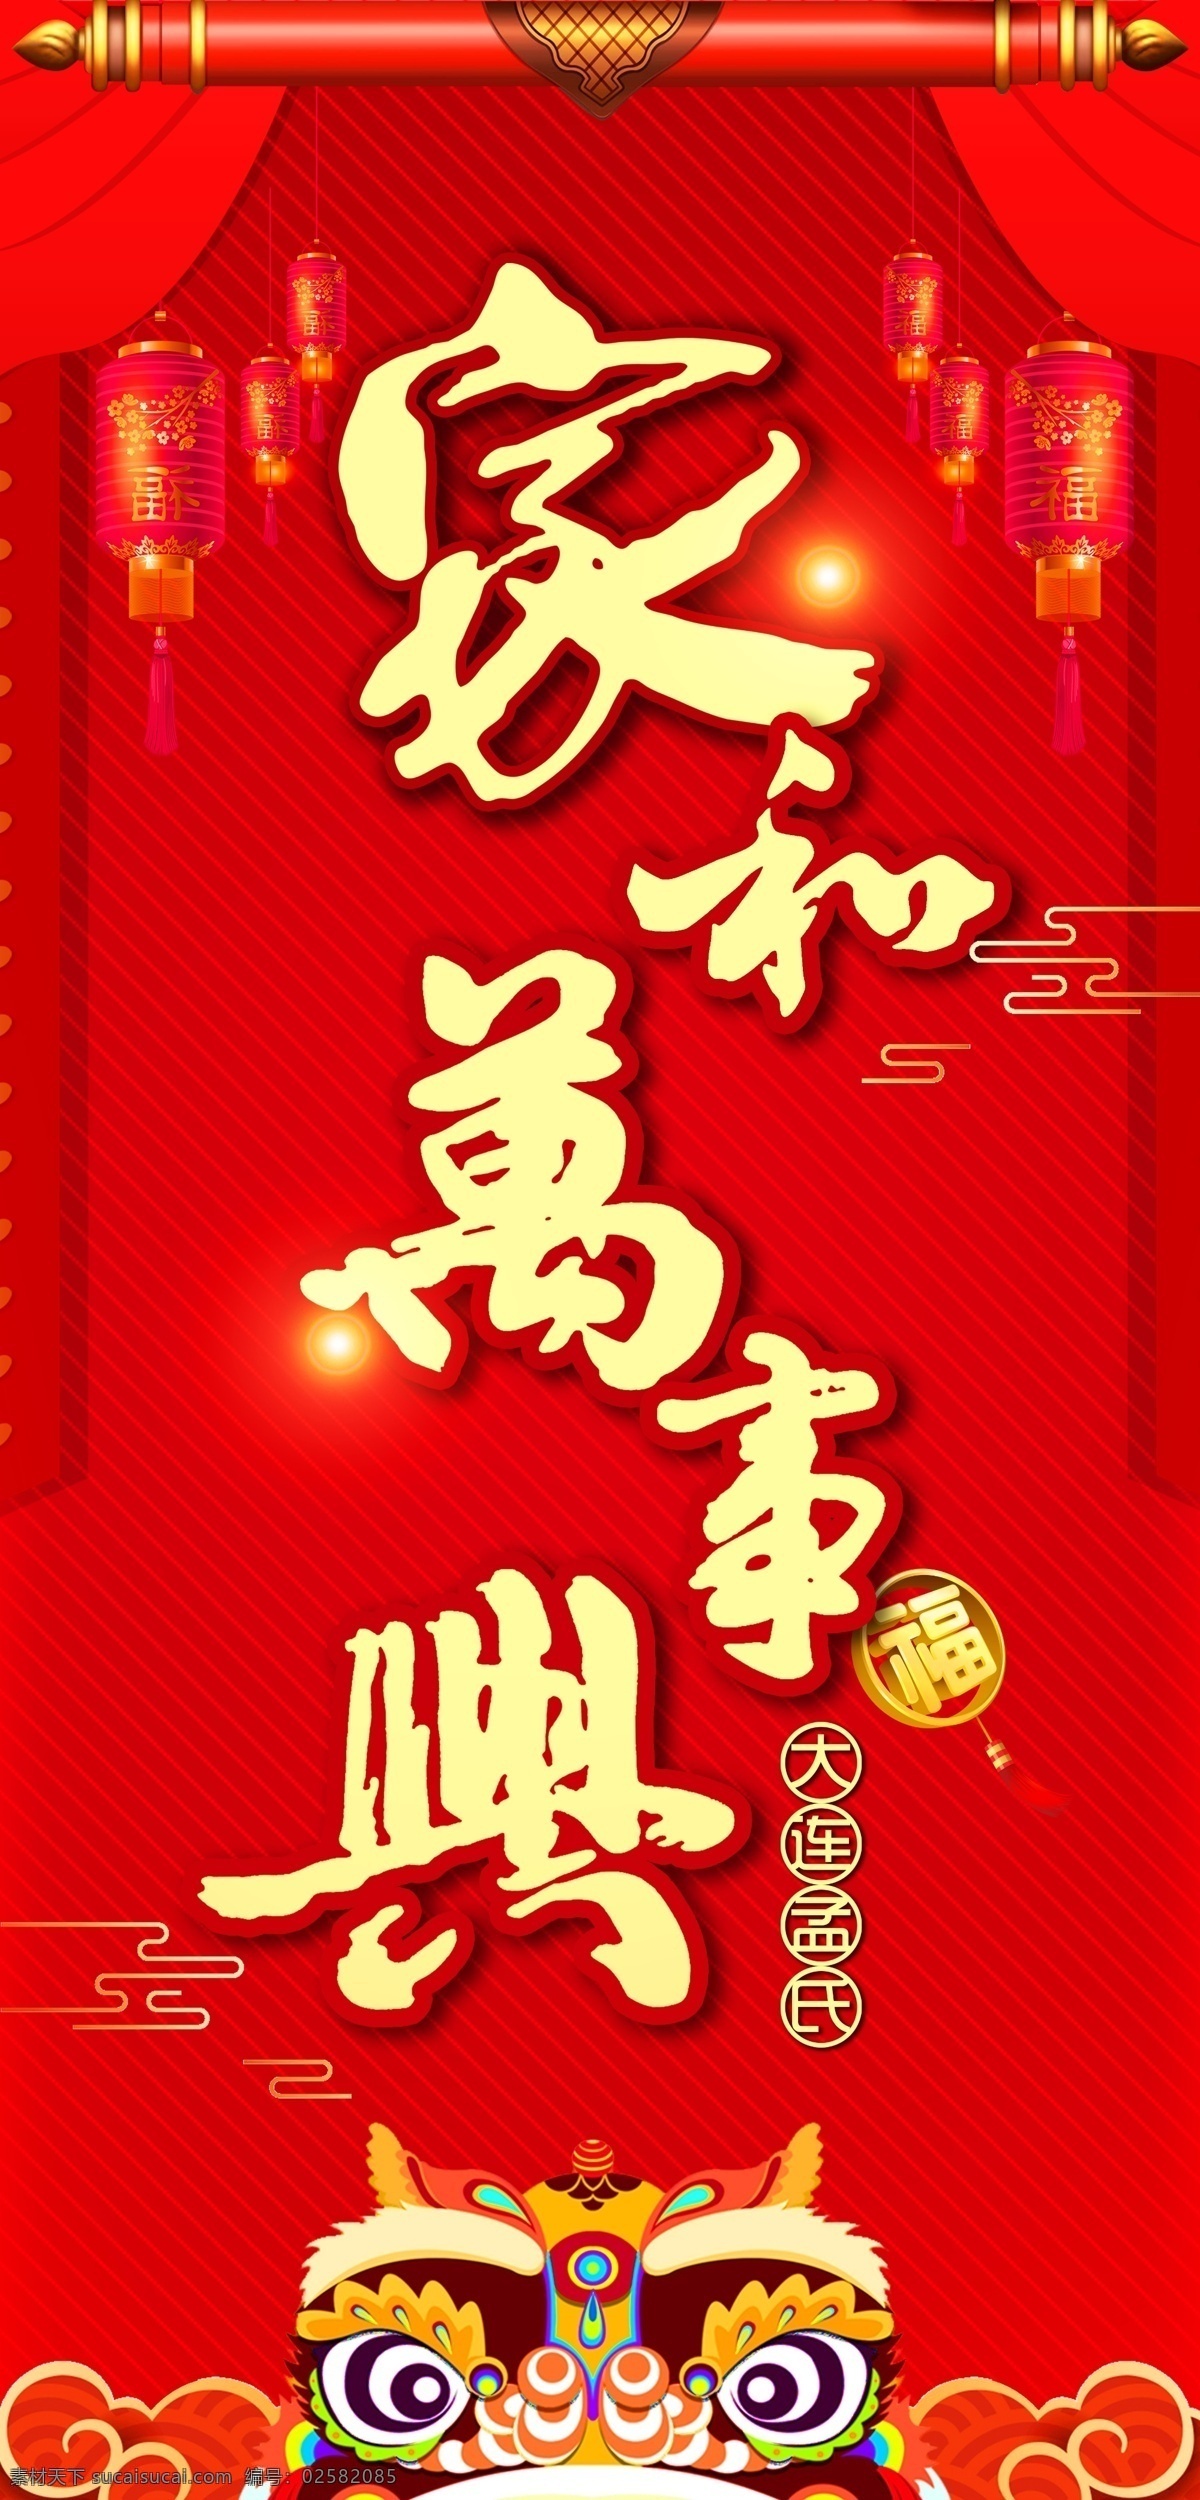 家和万事兴 红色 文字 狮子头 幕布 灯笼 文化艺术 传统文化